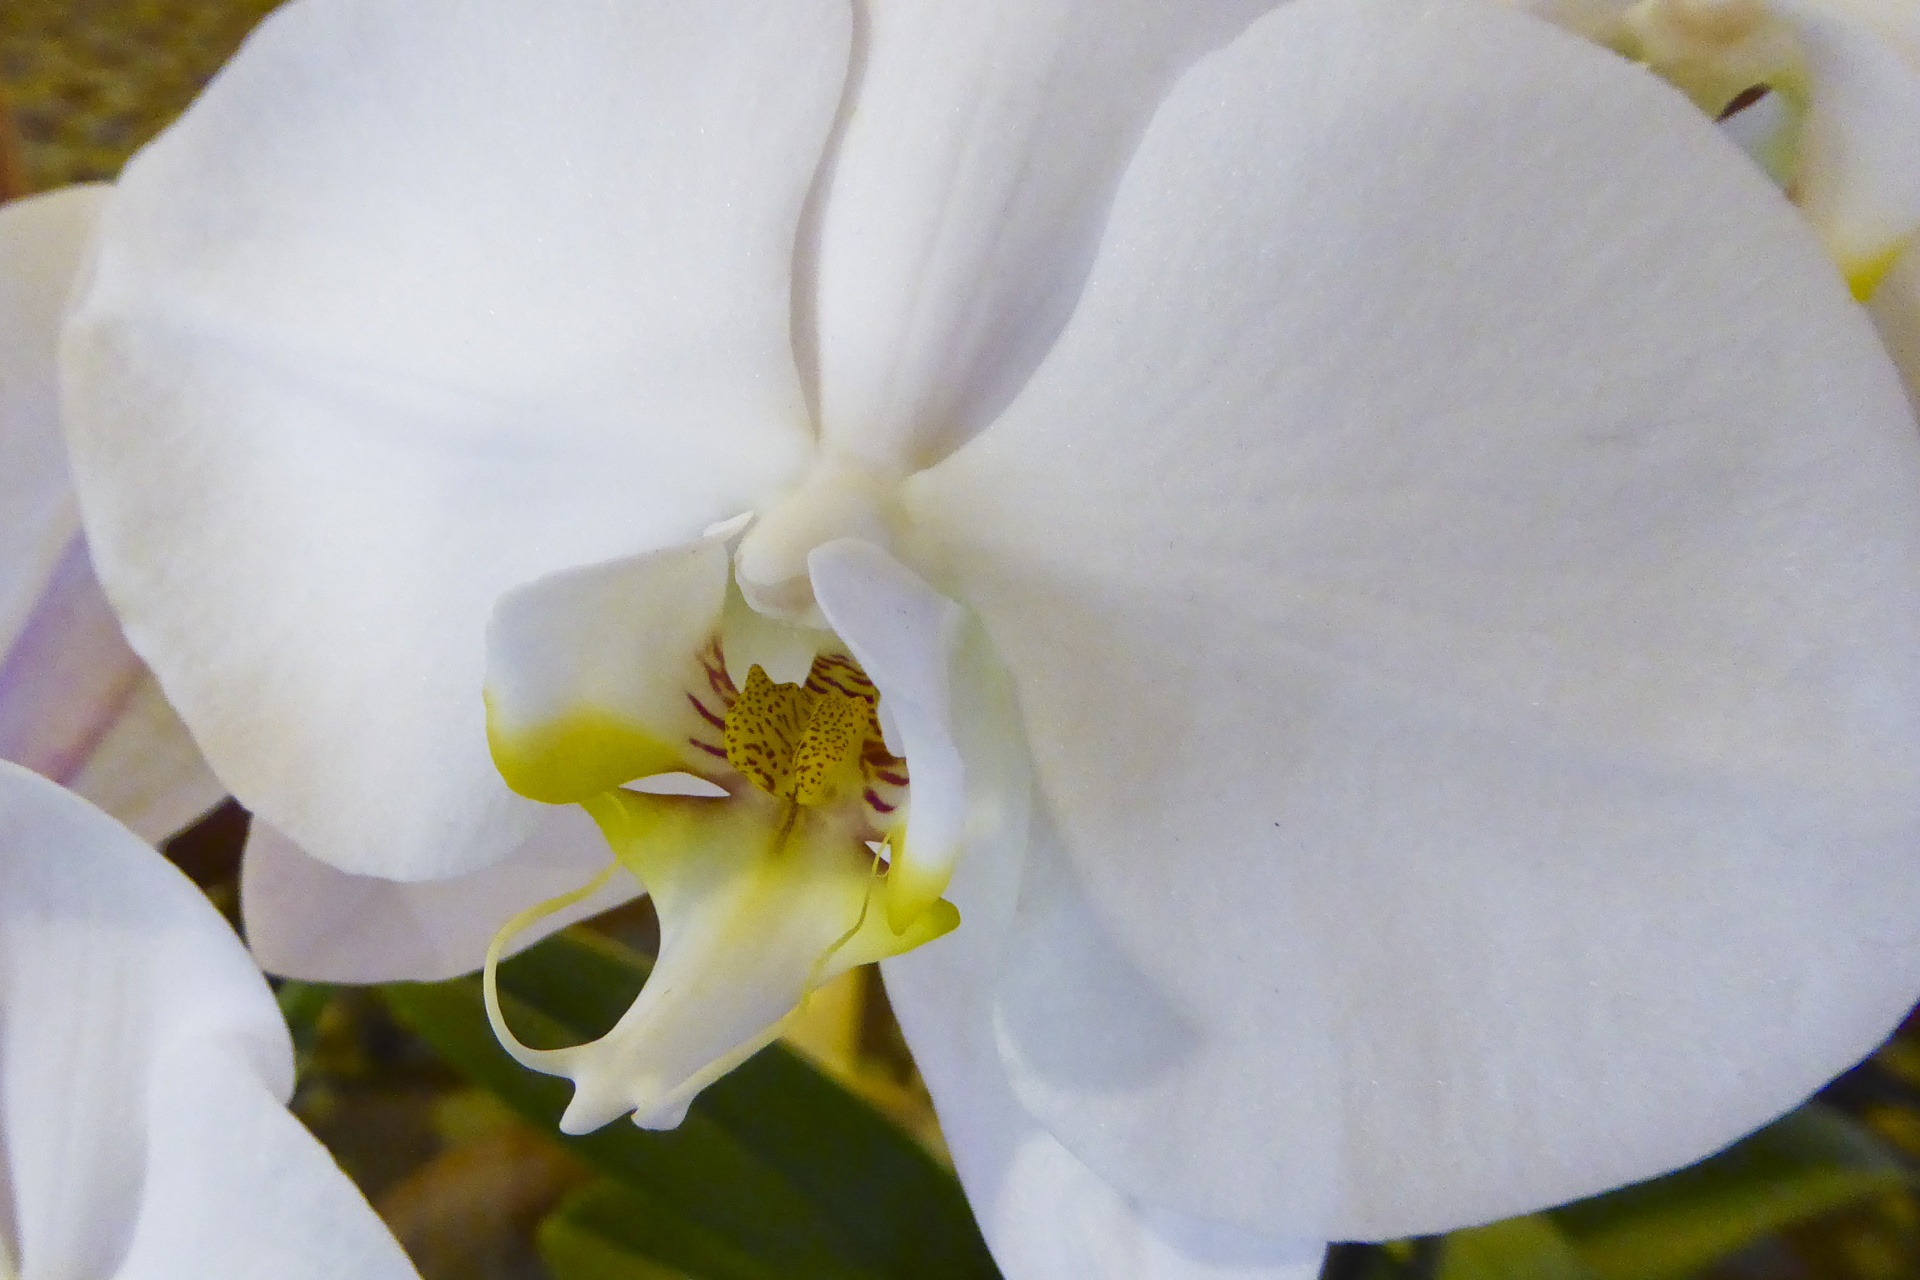 Каталог белых орхидей фаленопсис с фотографиями и названиями